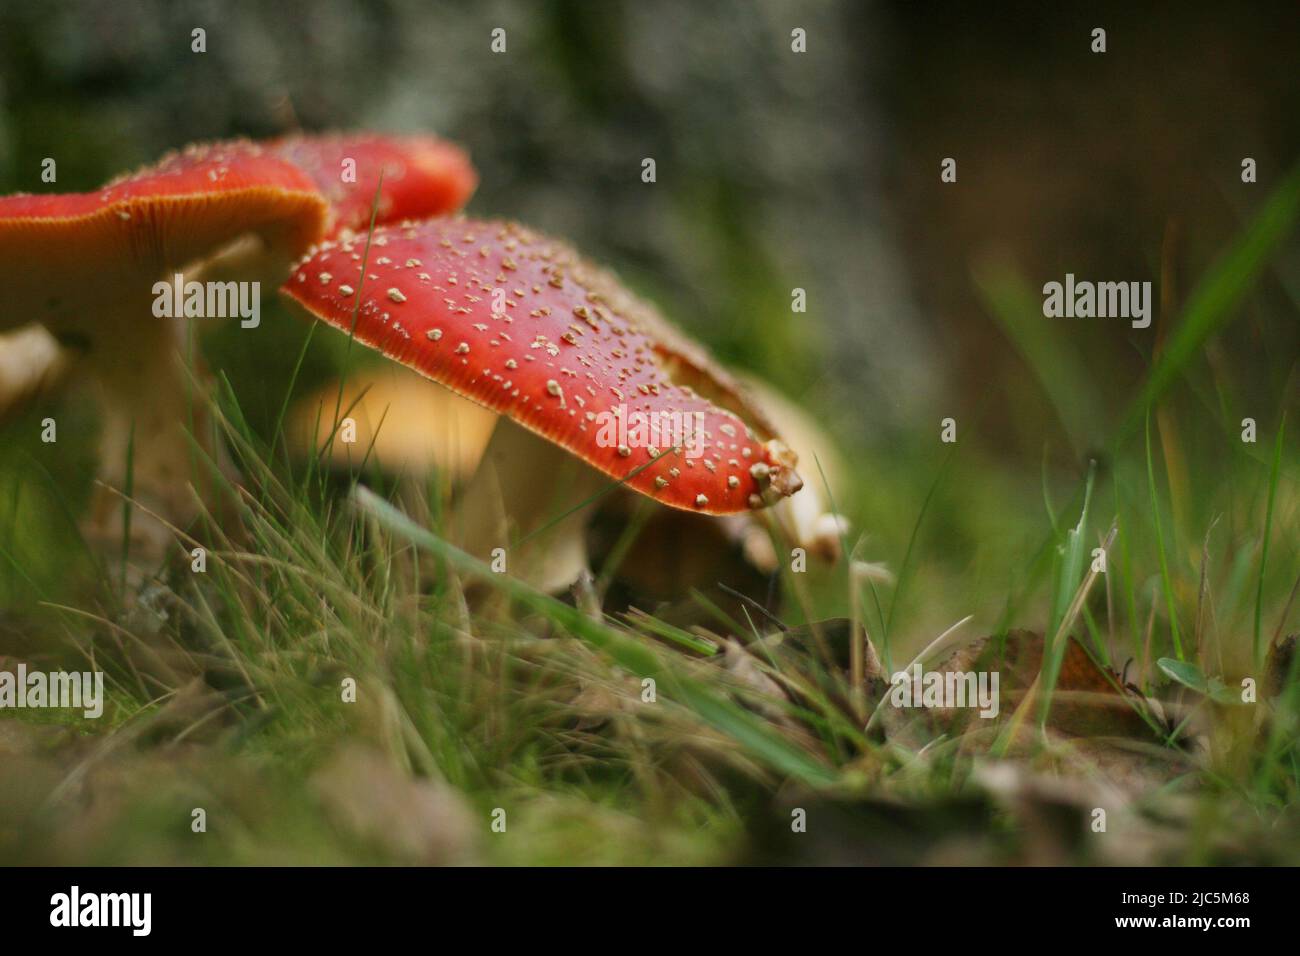 Vita forestale. Fly funghi agarici. Immagine romantica di due funghi appoggiati l'uno sull'altro Foto Stock